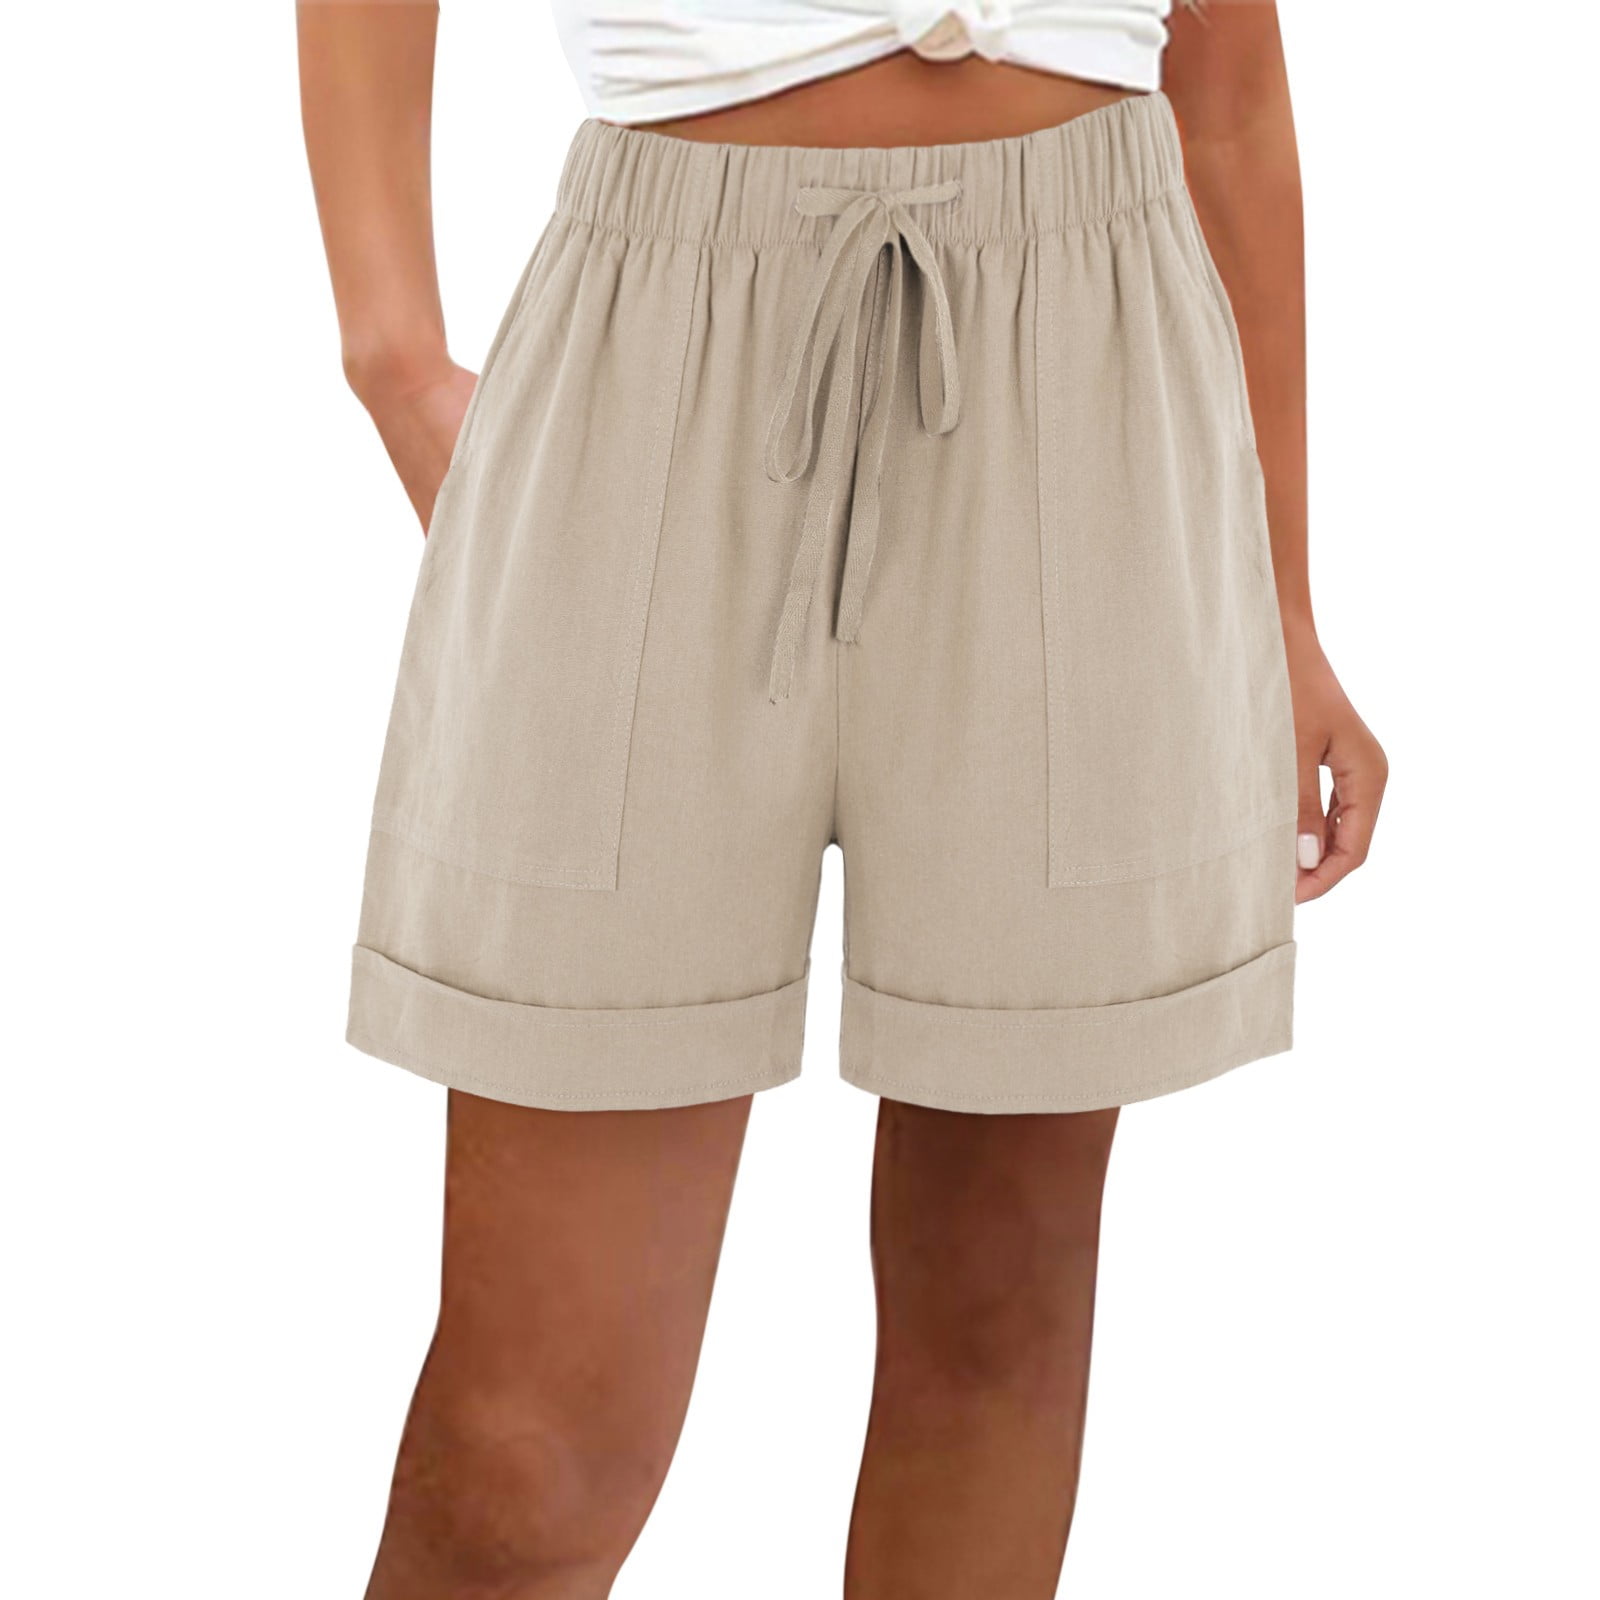 PMUYBHF Womens Shorts 7 Inch Inseam Dressy Shorts Casual Women's